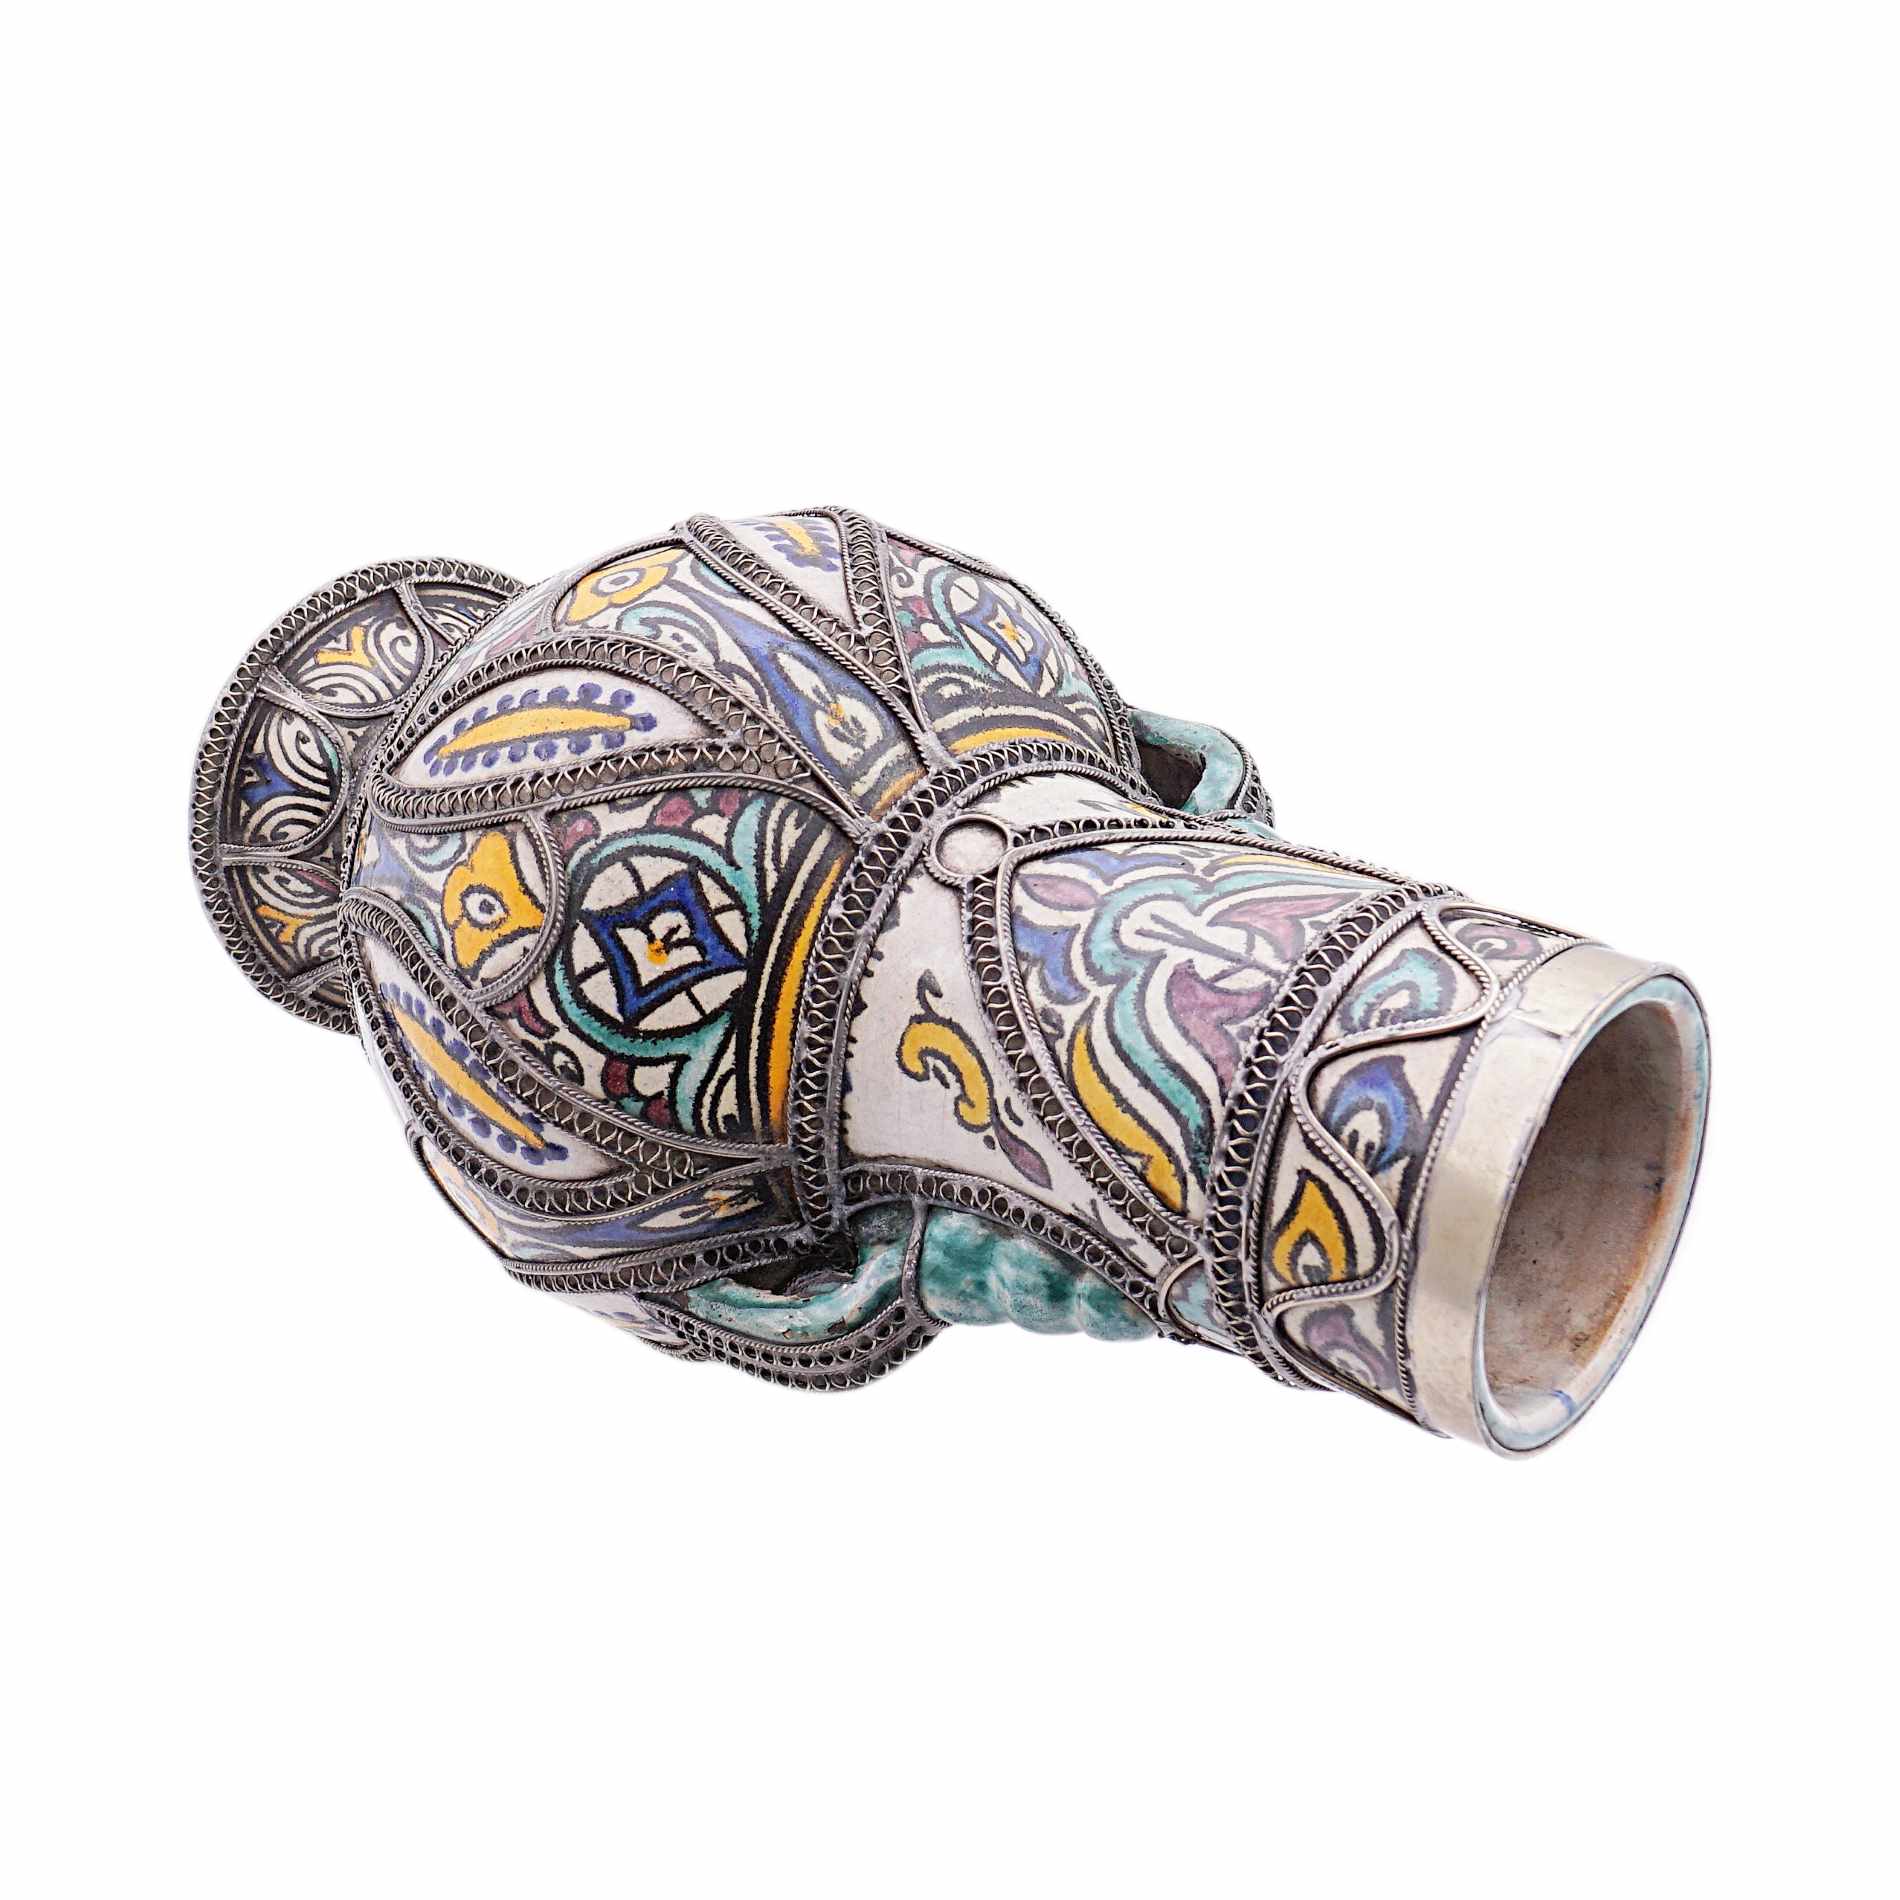 Keramikkrug mit Maillechort - Marokko